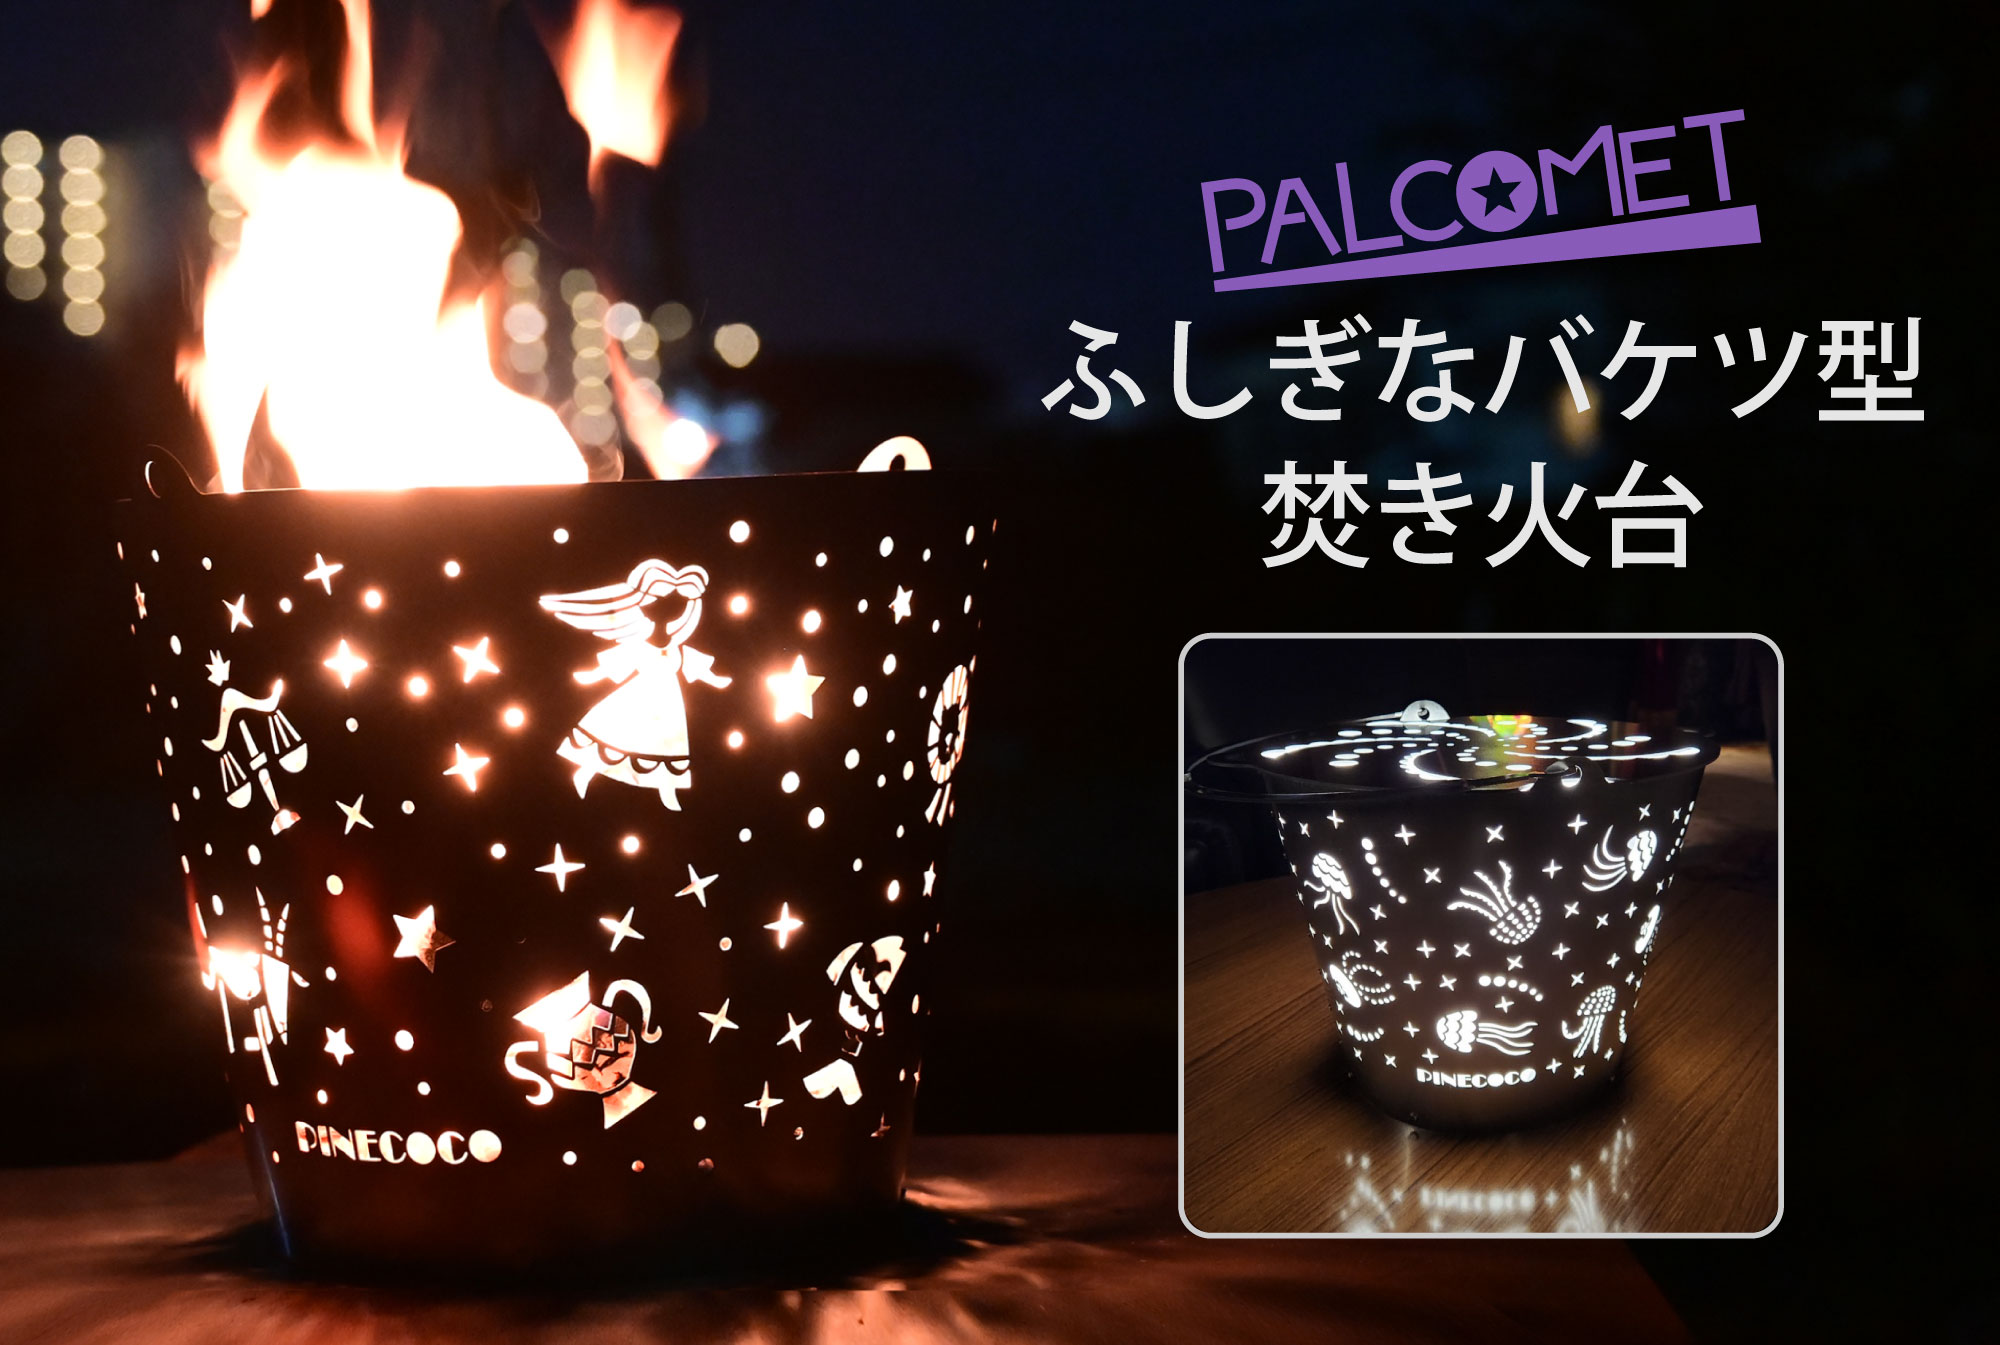 ふしぎなバケツ型焚火台「パルコメット」 | PINECOCO 楽しいをカタチに